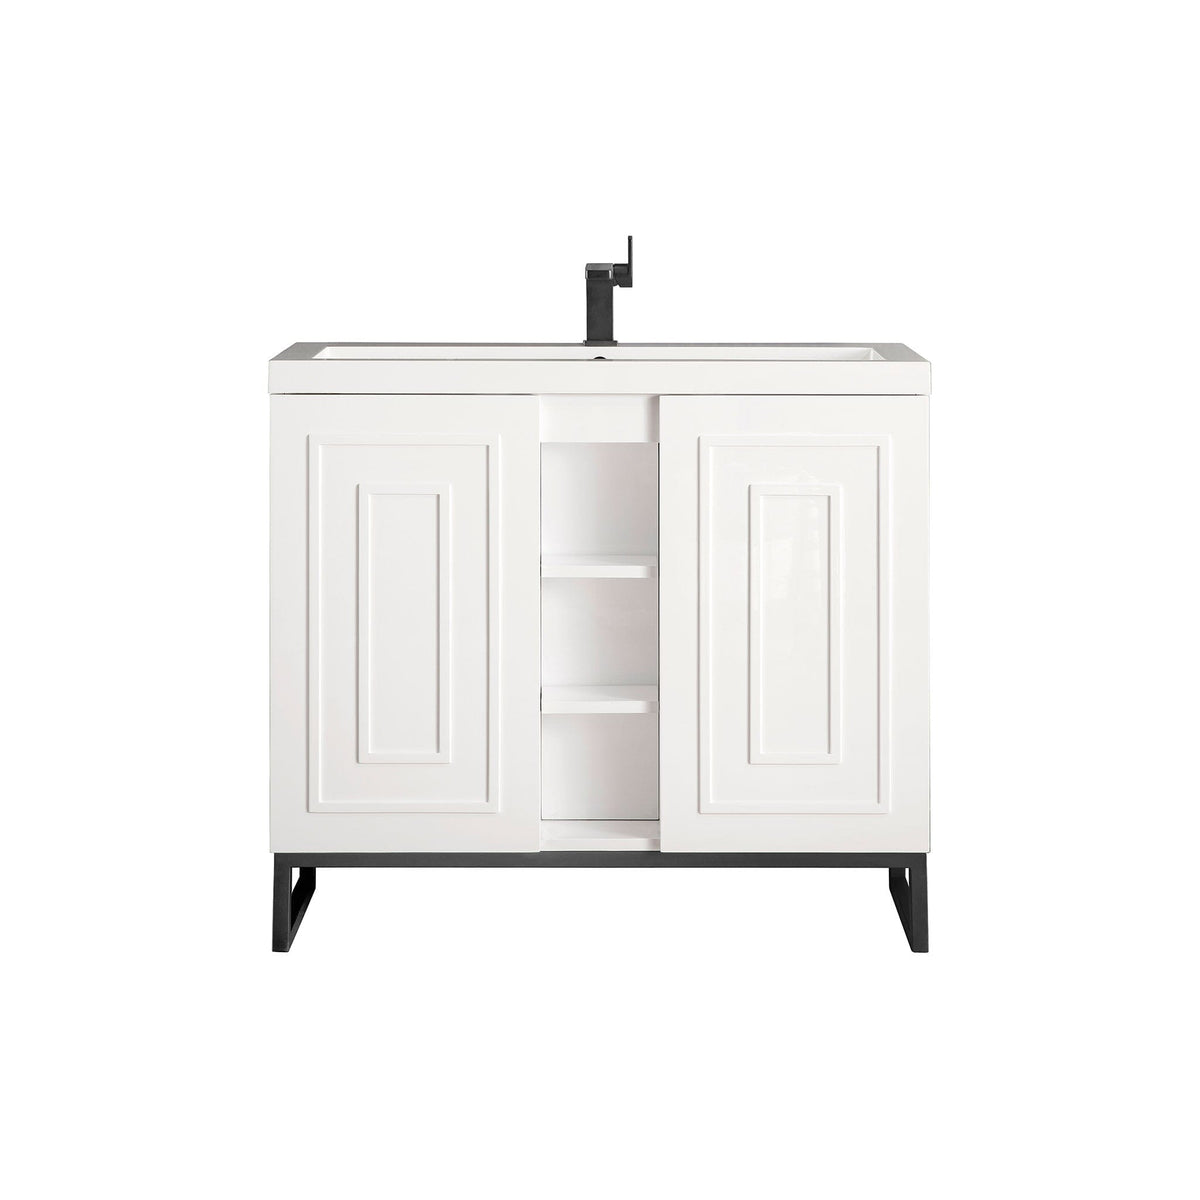 39.5" Alicante' Single Vanity Cabinet, Glossy White w/ Matte Black